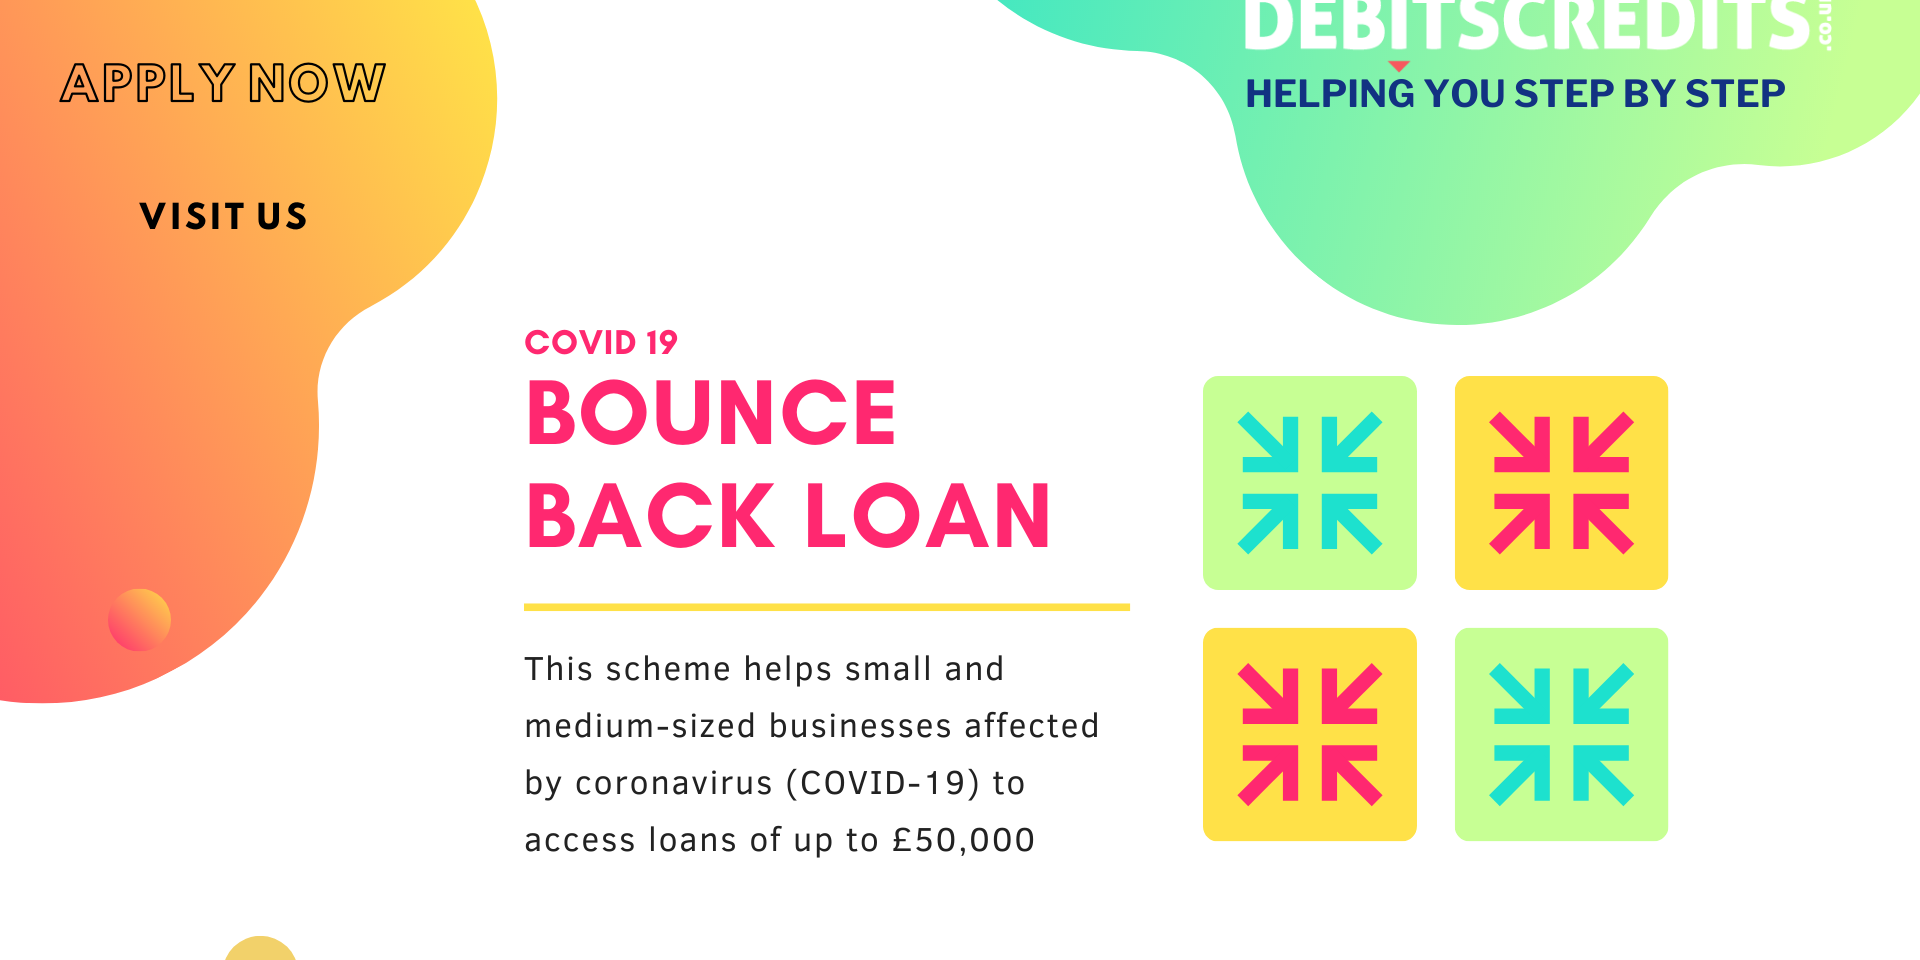 Bounce Back Loan DebitsCredits.co.uk